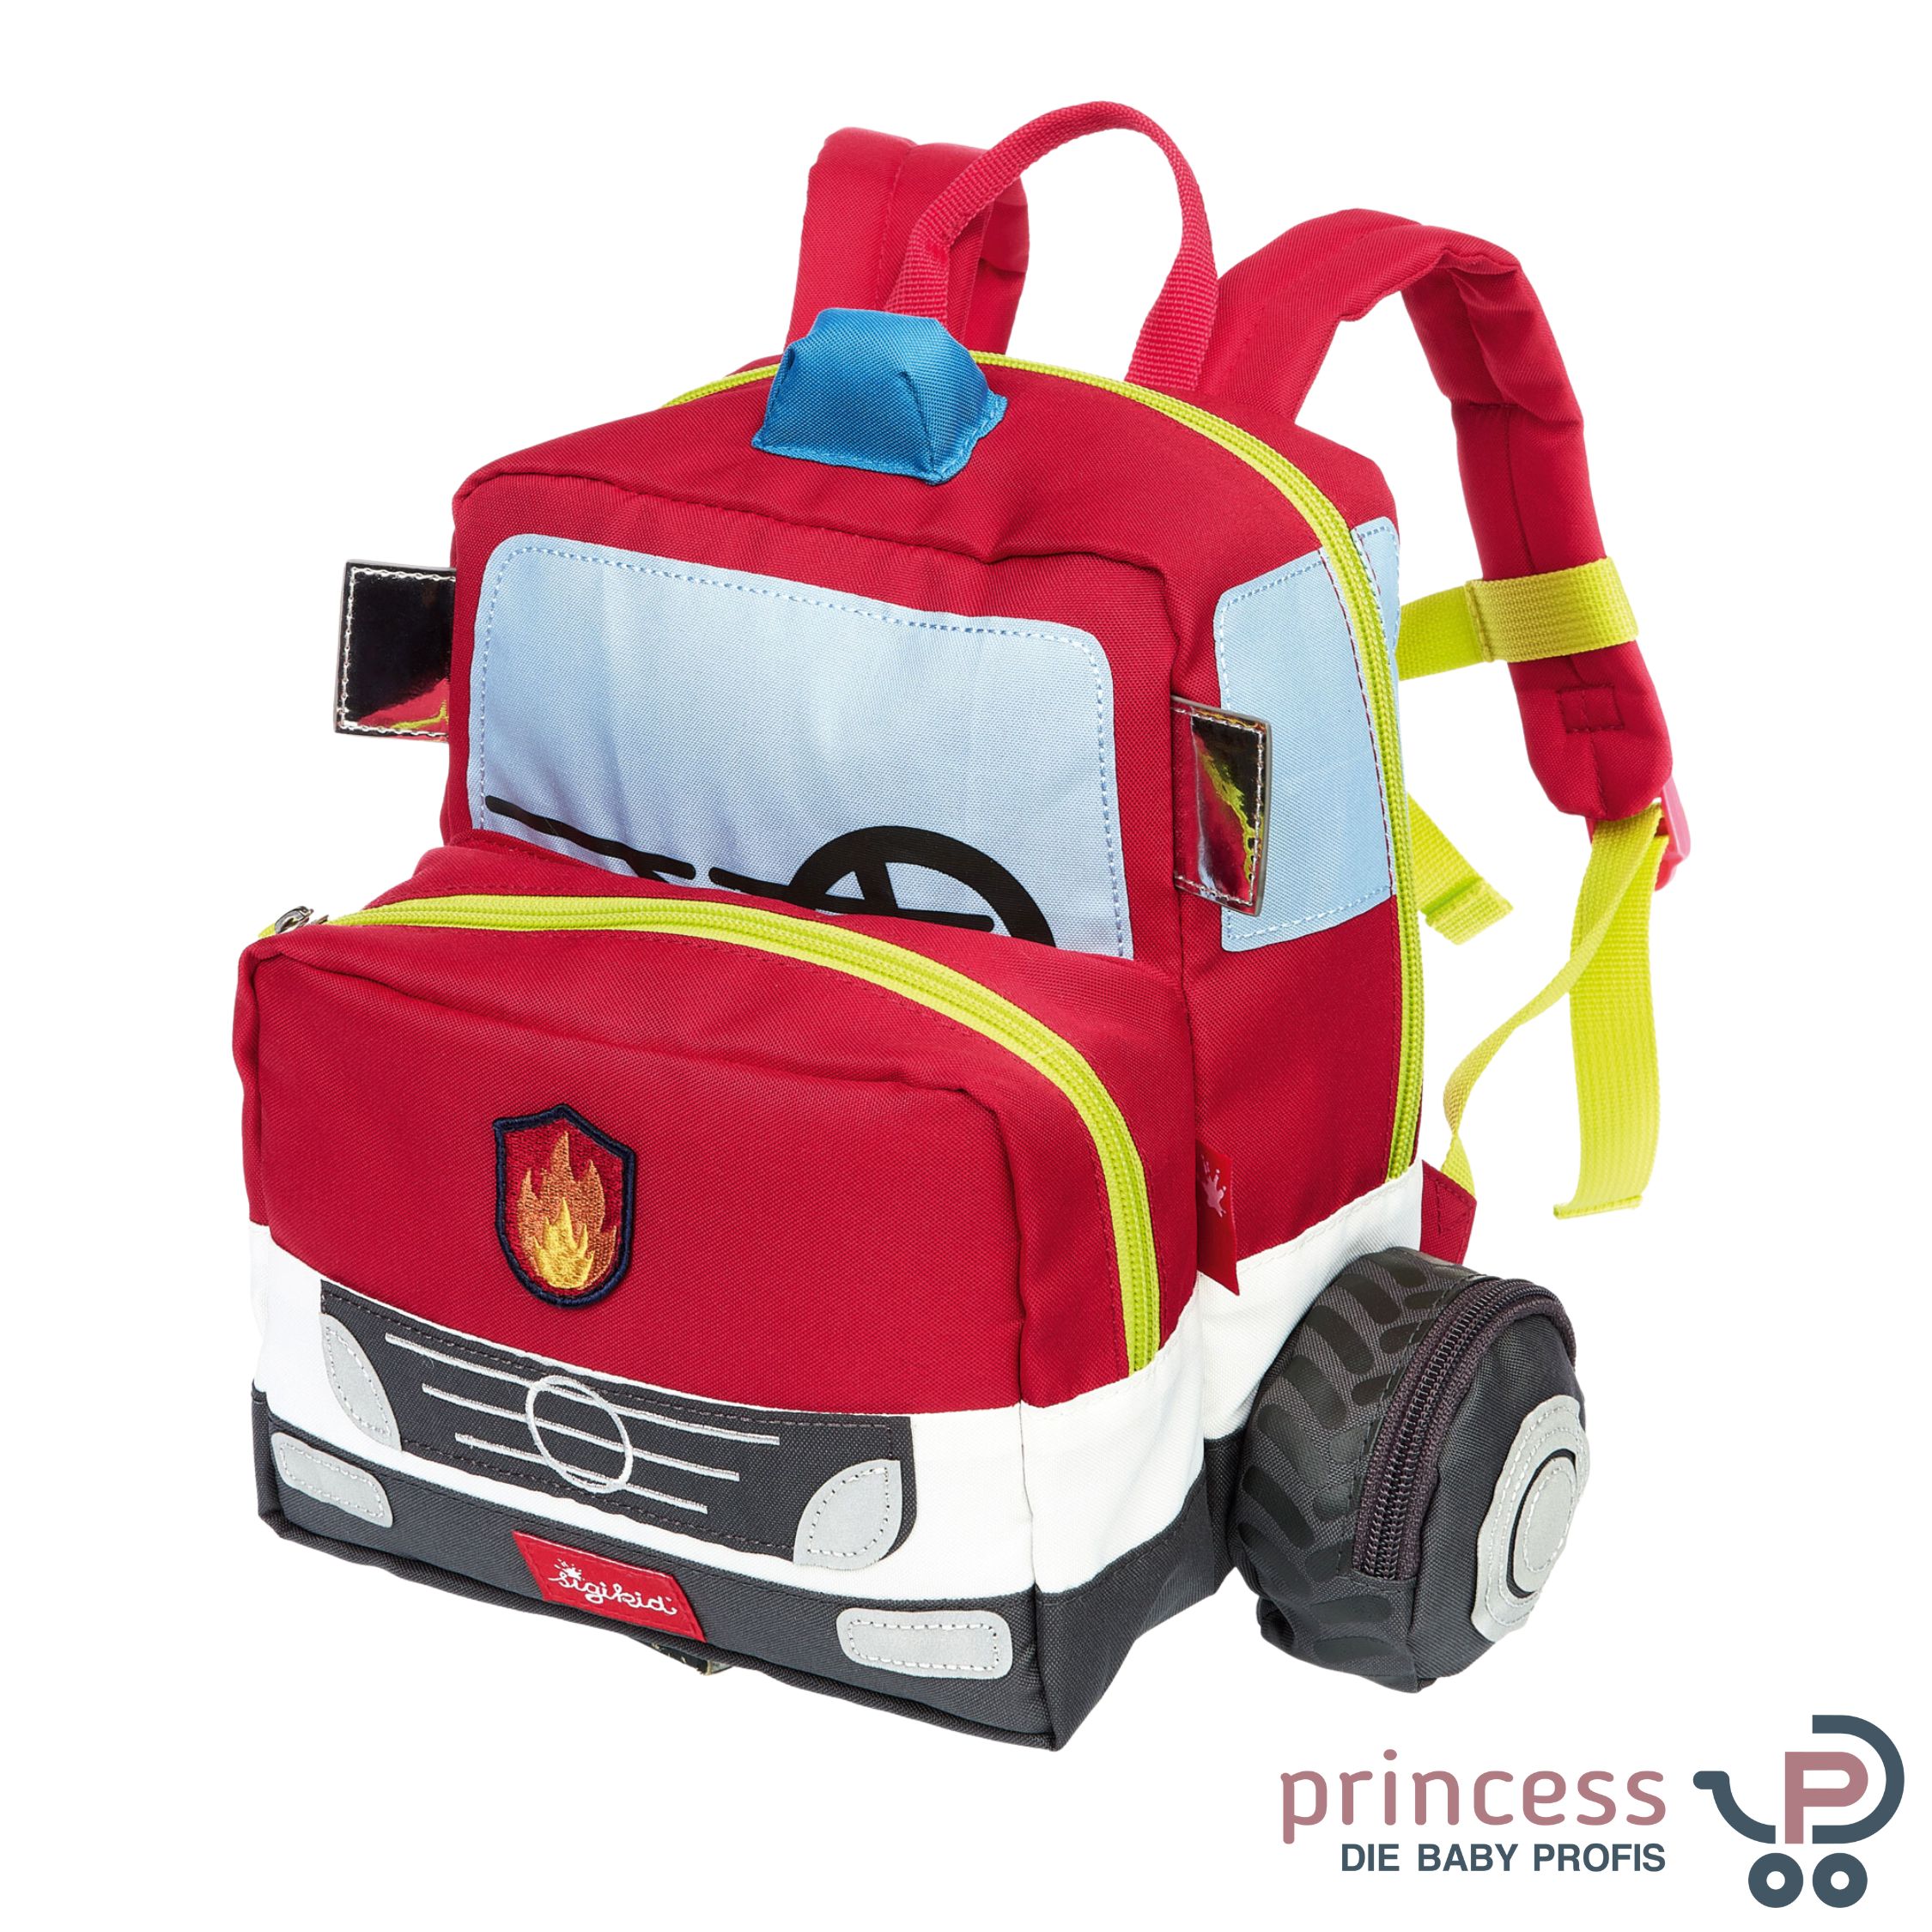 Sigikid Kinderrucksack Princess Onlineshop Feuerwehrauto - Kinderwagen